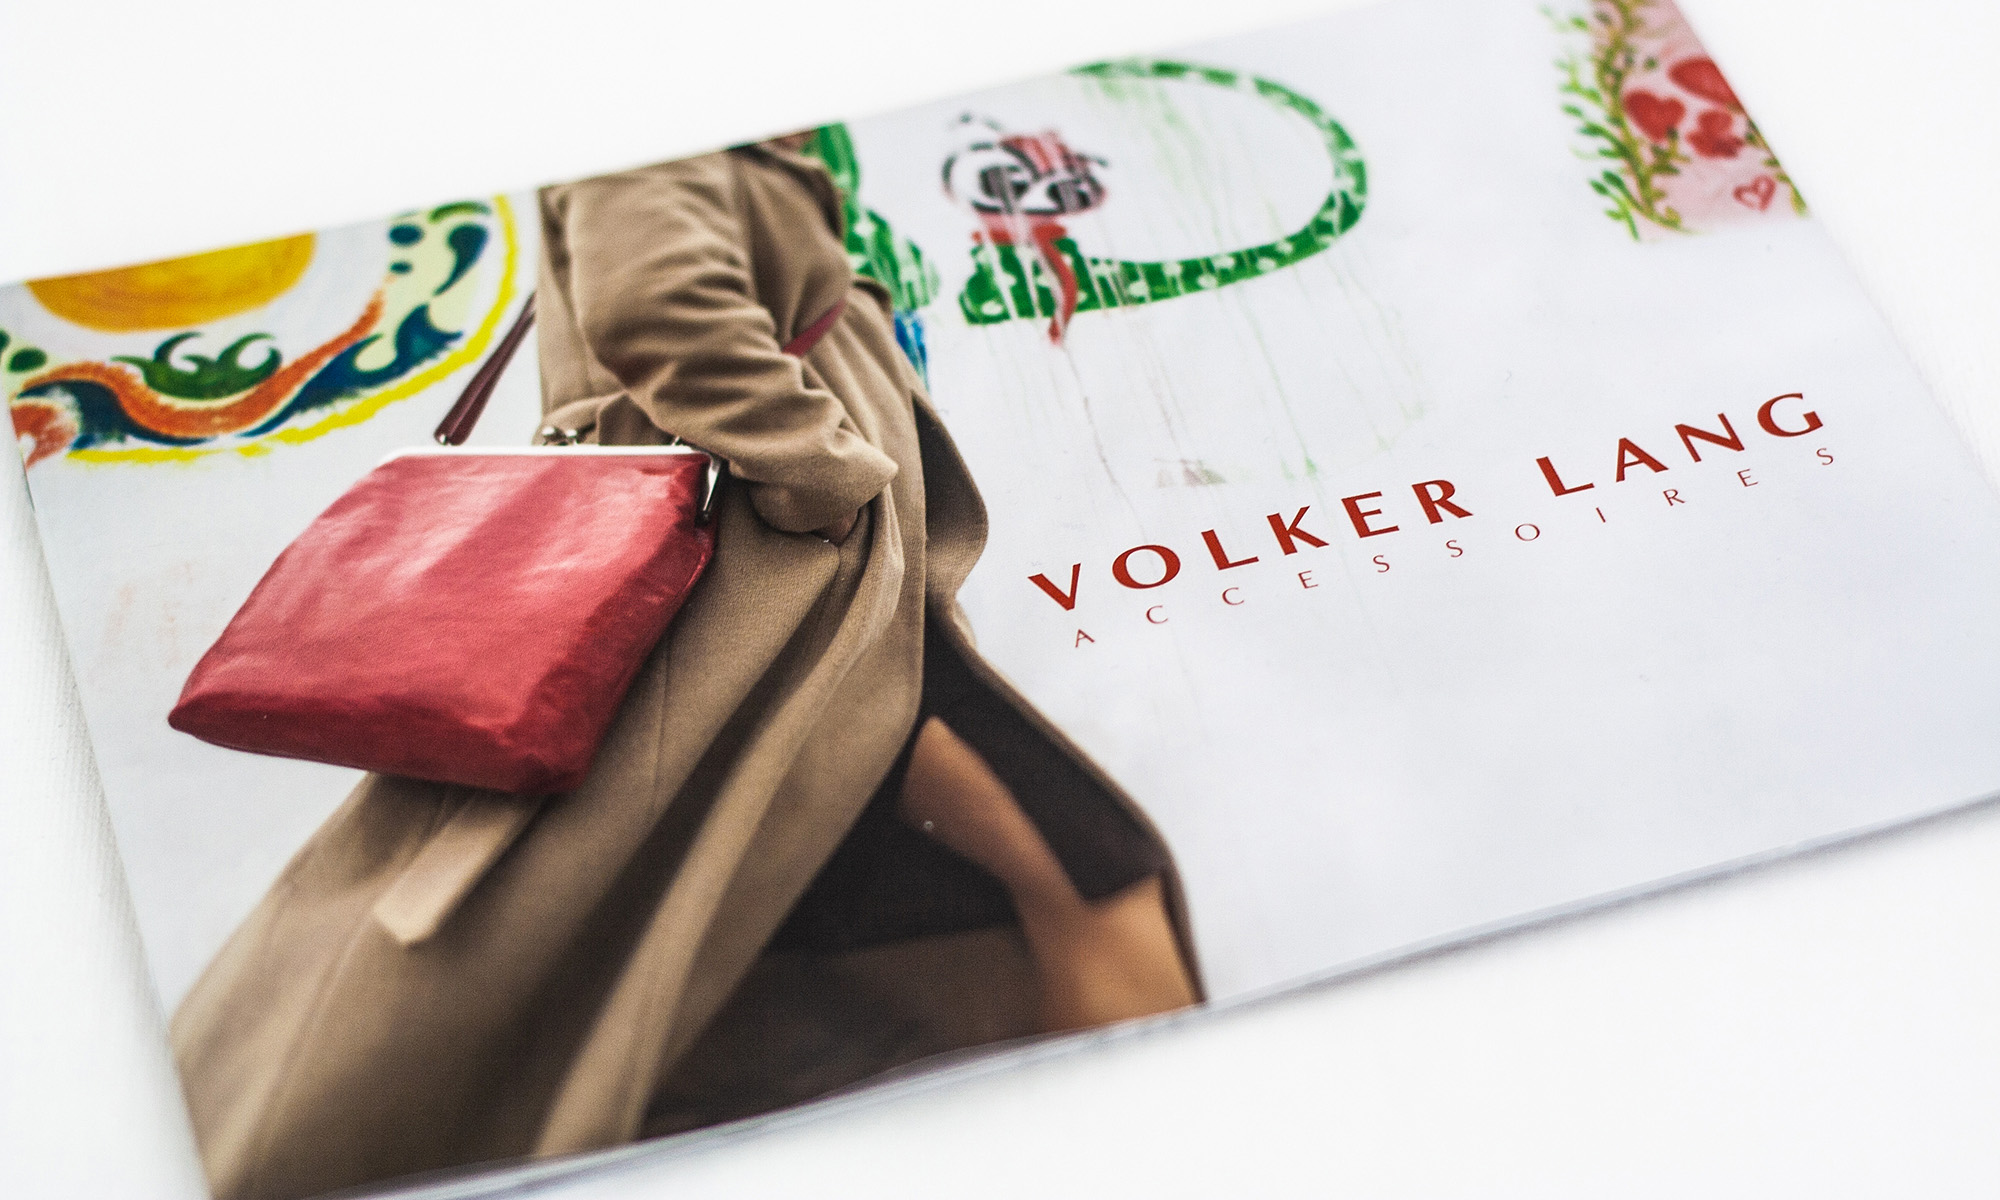 Volker Lang Coverseite mit Frau und roter Tasche